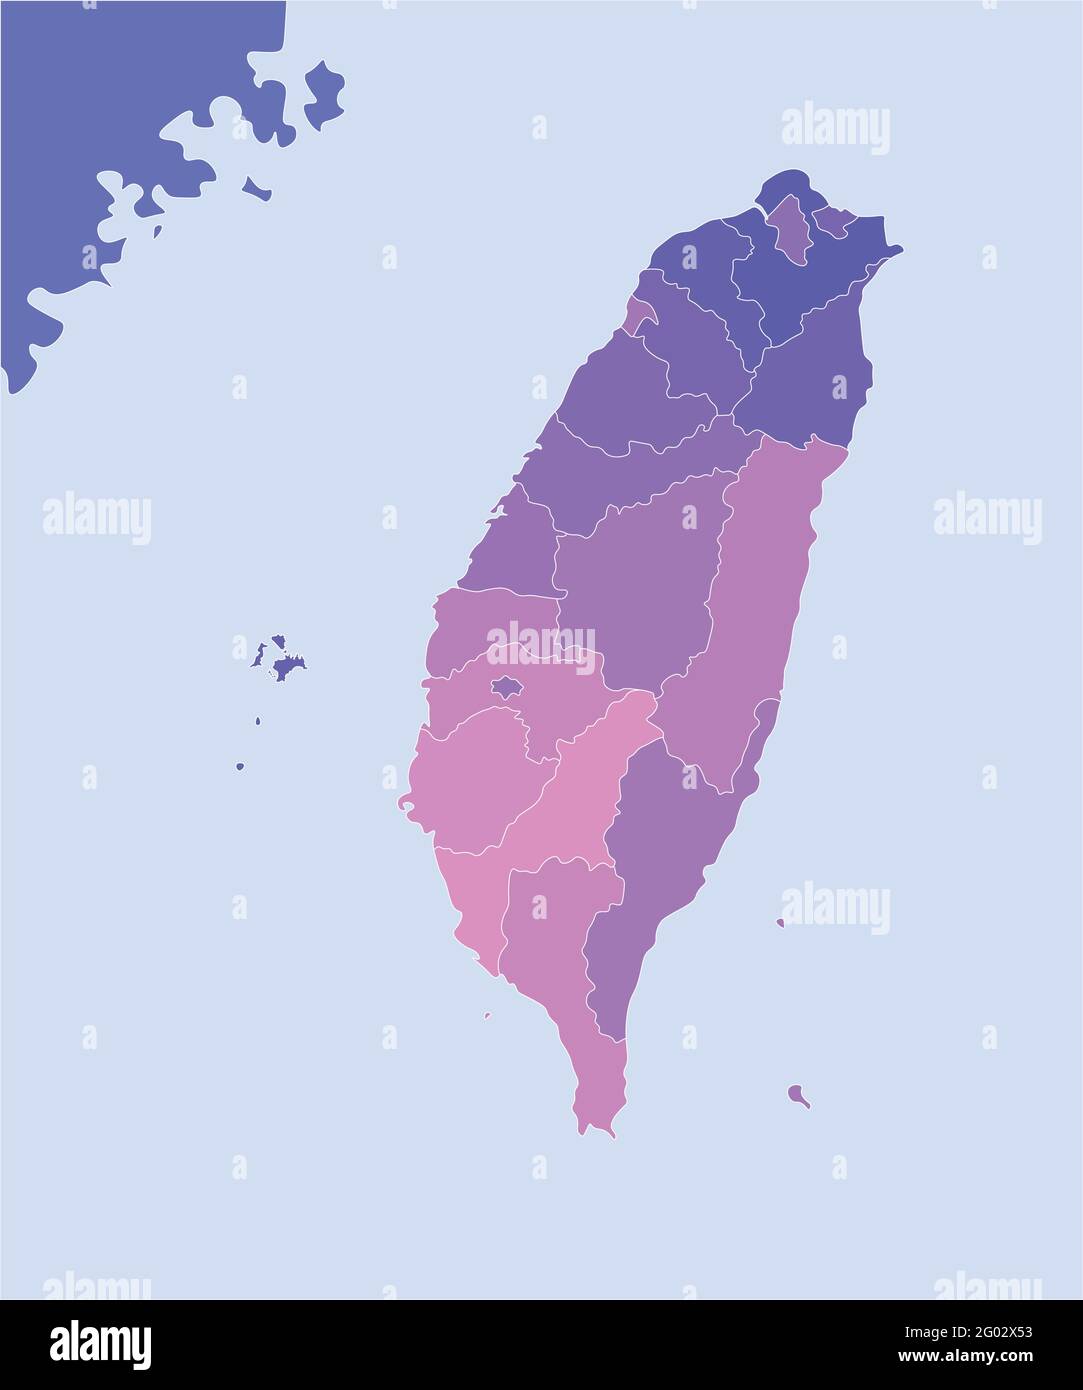 Vektorgrafik. Vereinfachte geografische Karte von Taiwan (Republik China) und den nächsten Gebieten. Blauer Hintergrund der Meere. Grenze von taiwan Stock Vektor